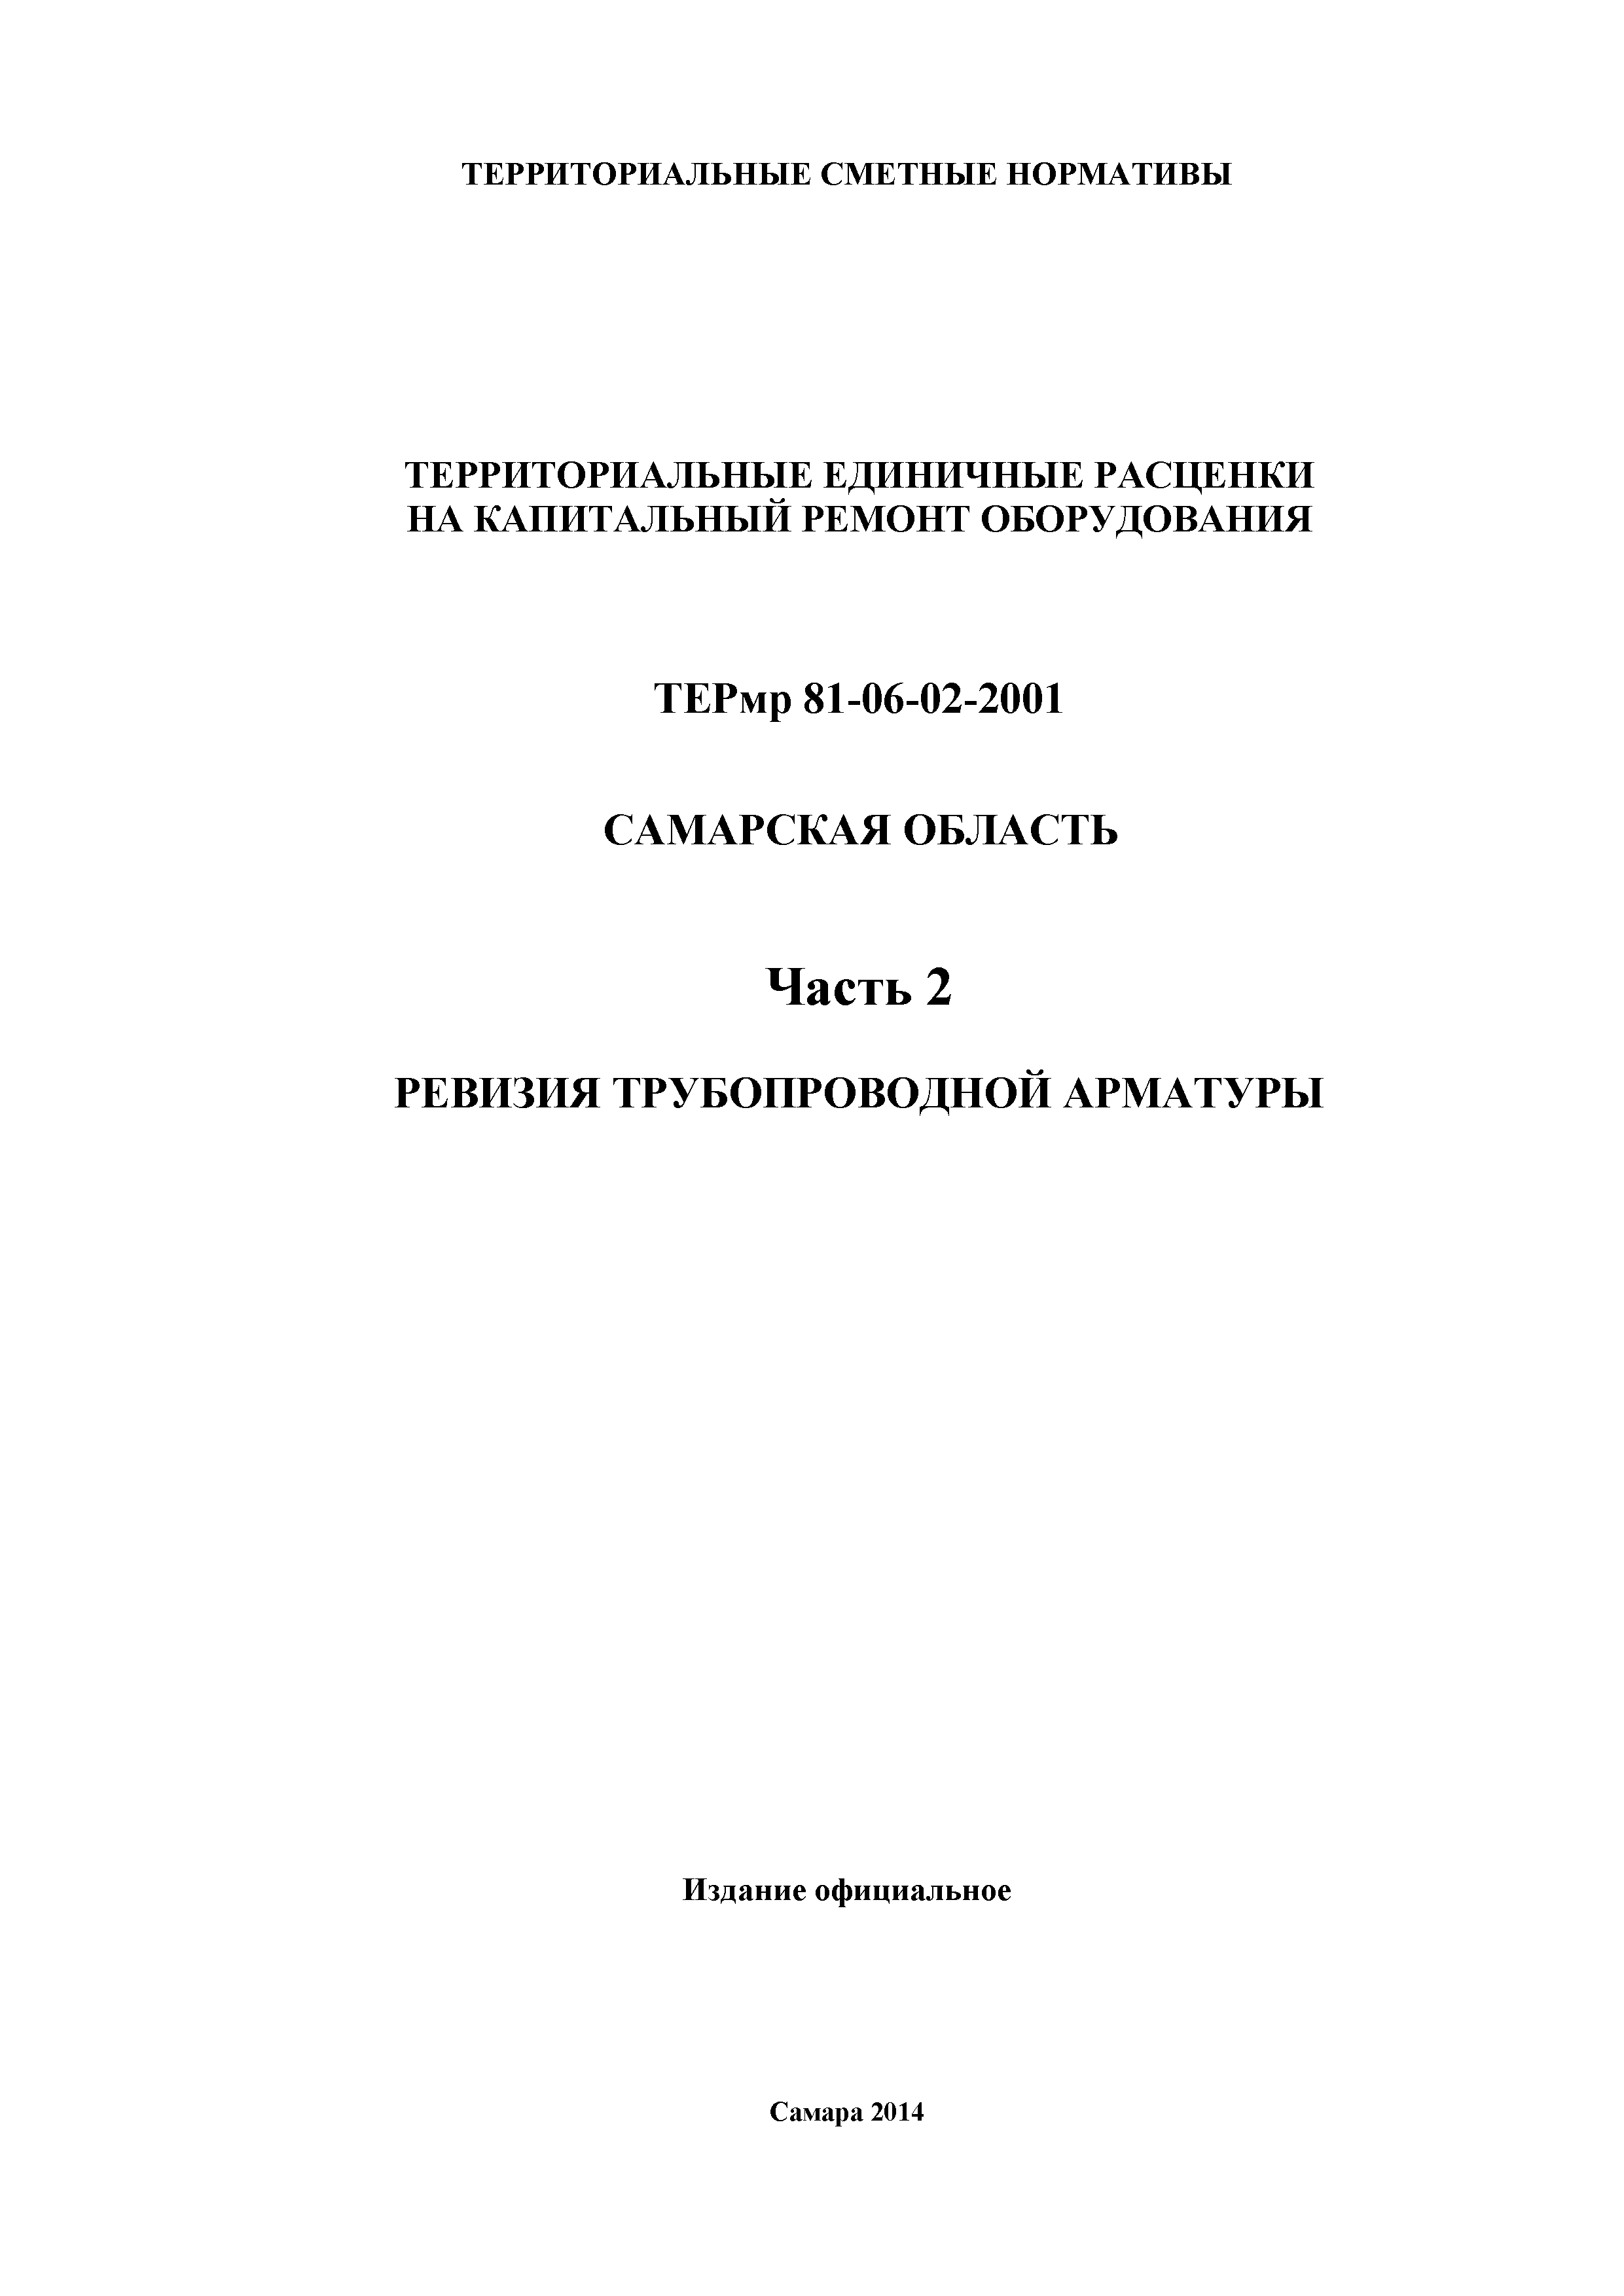 ТЕРмр Самарская область 81-06-02-2001